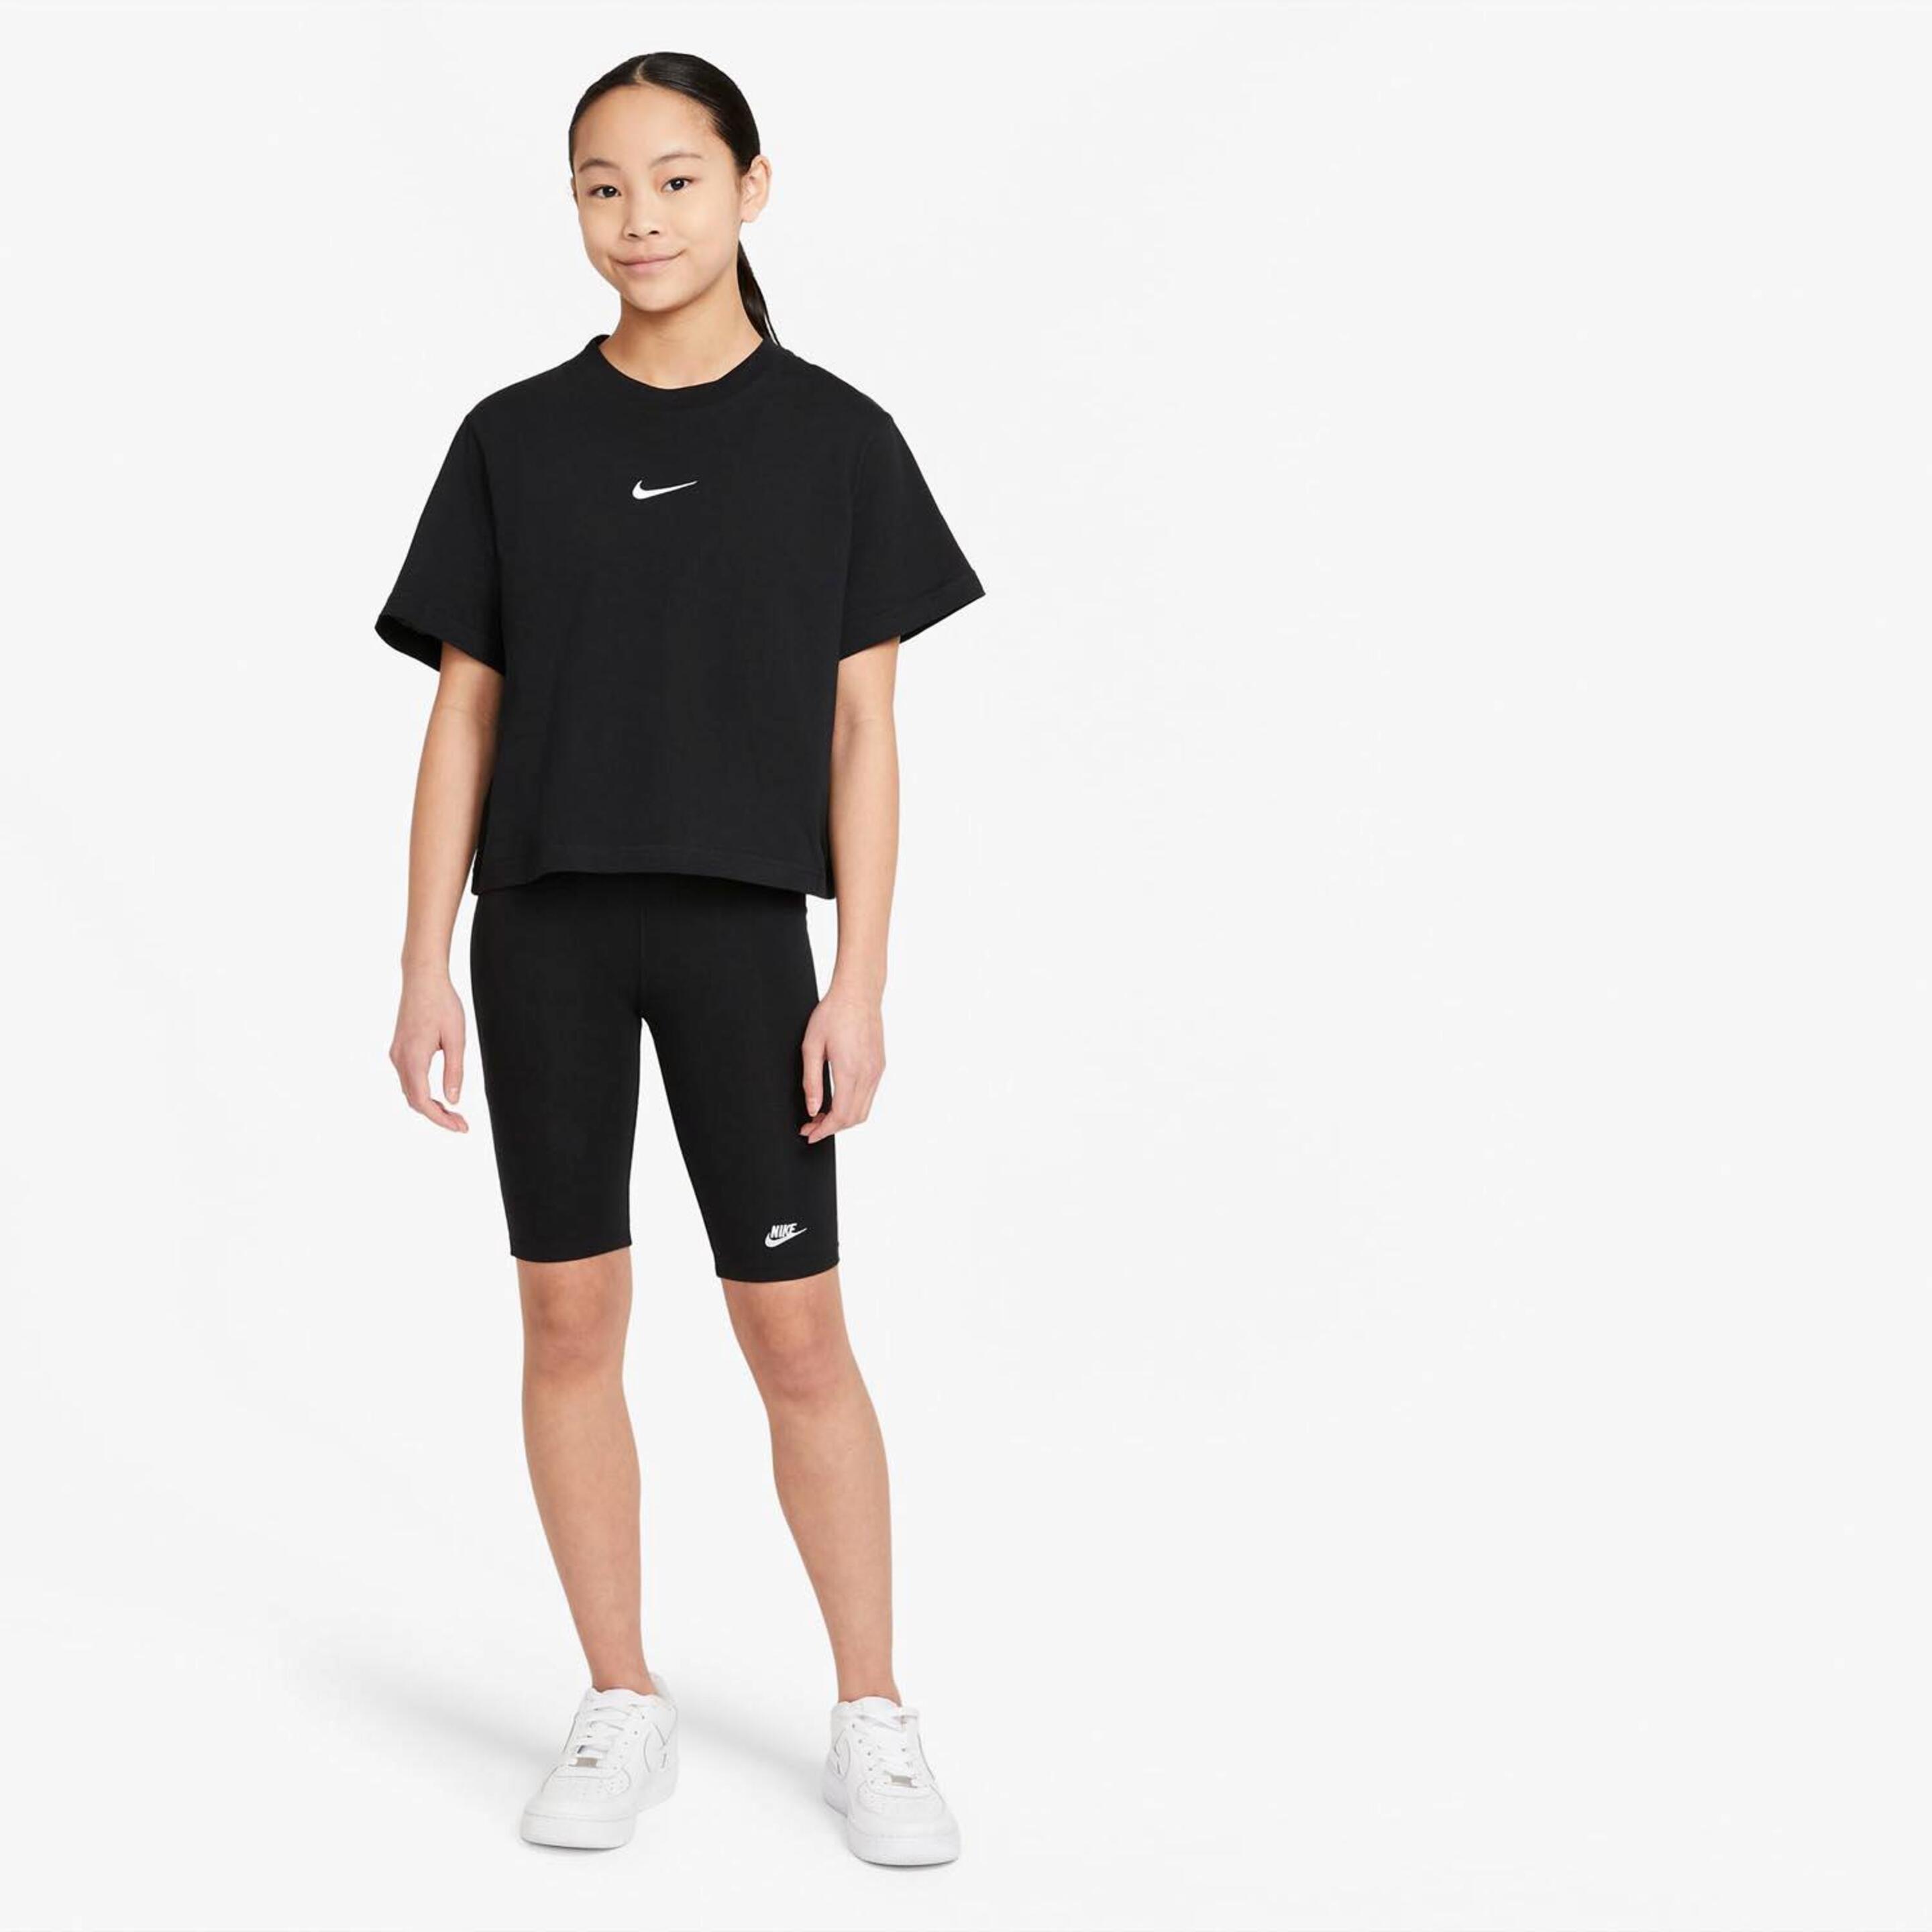 T-shirt Crop Nike Futura